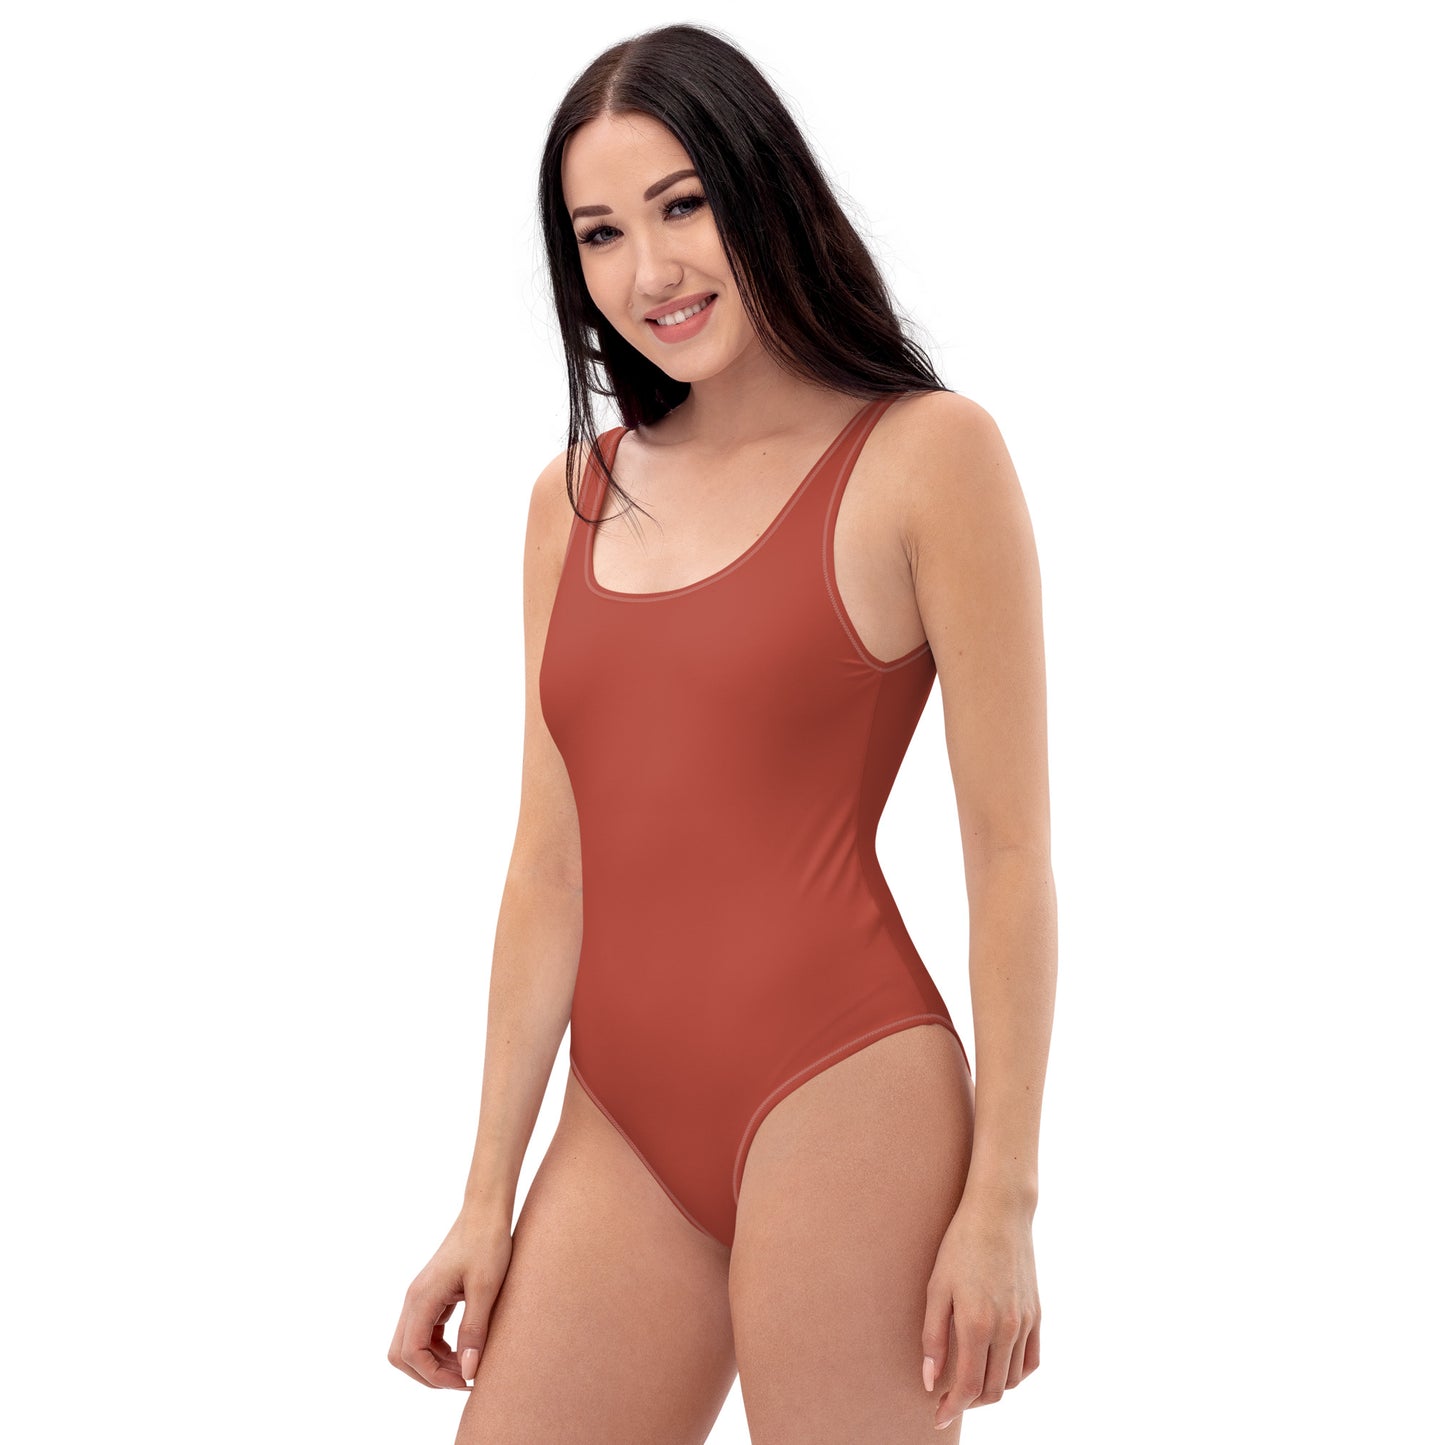 Crimson One-Piece Swimsuit